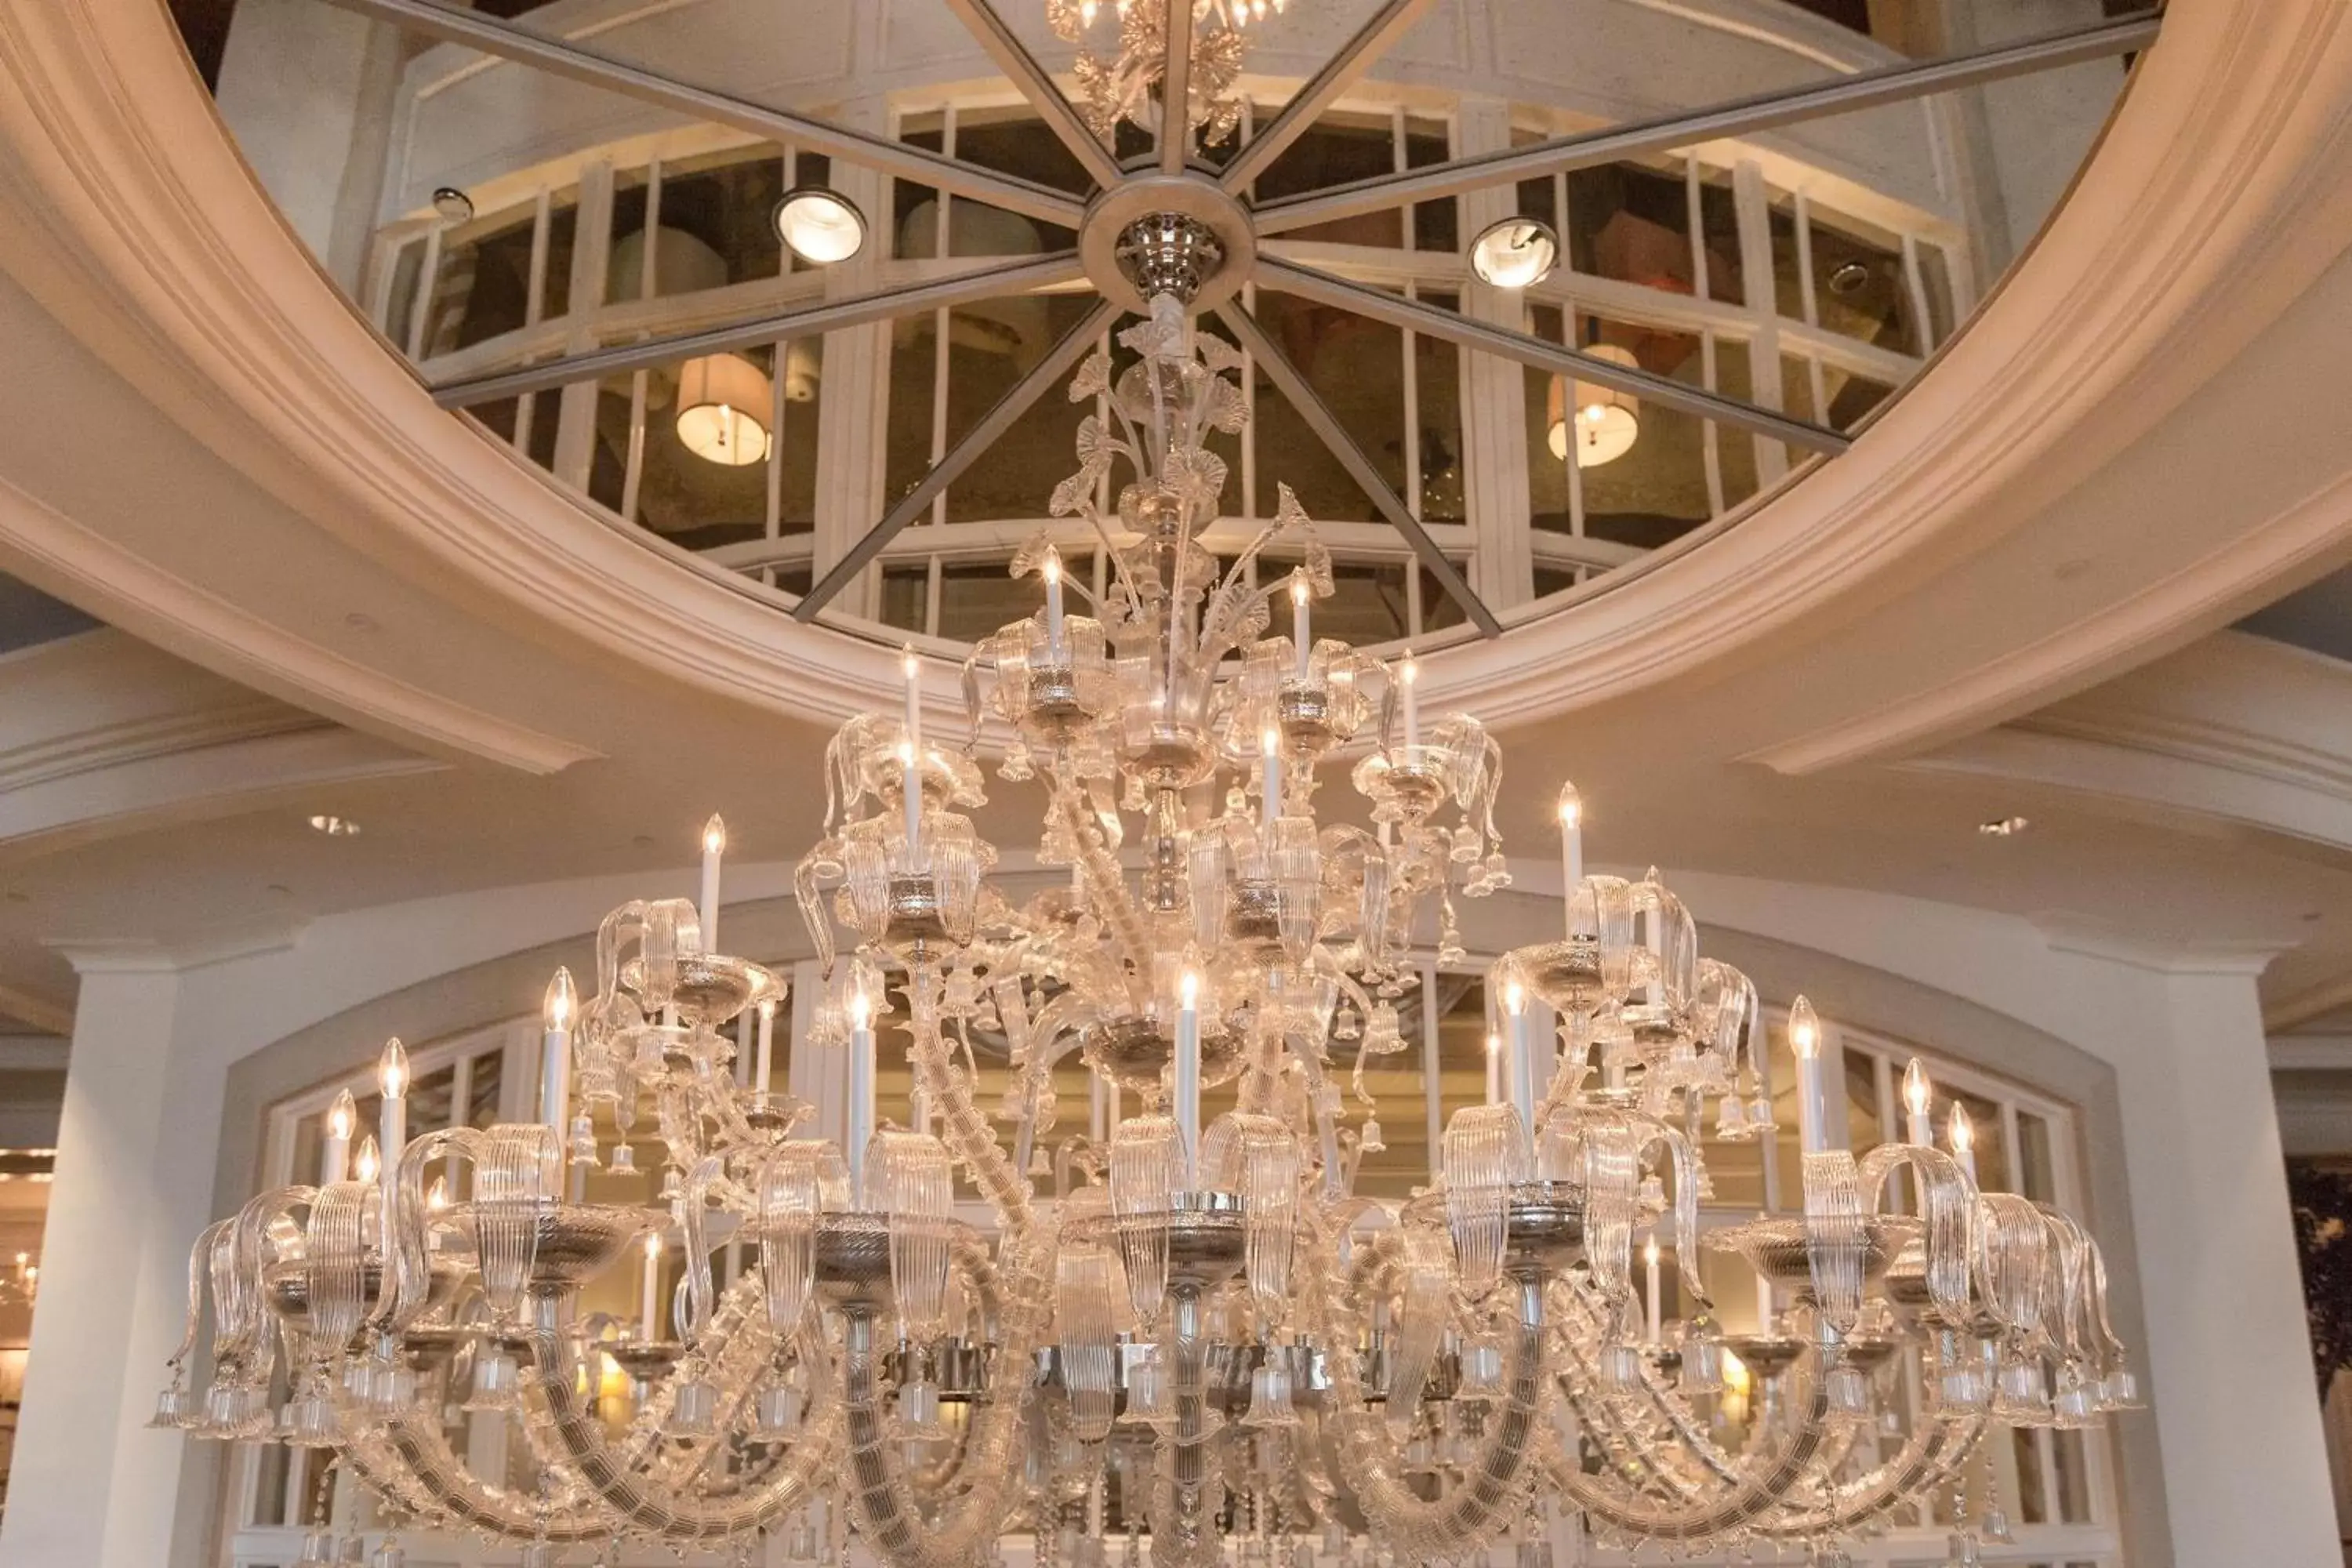 Lobby or reception, Banquet Facilities in The St. Regis Atlanta